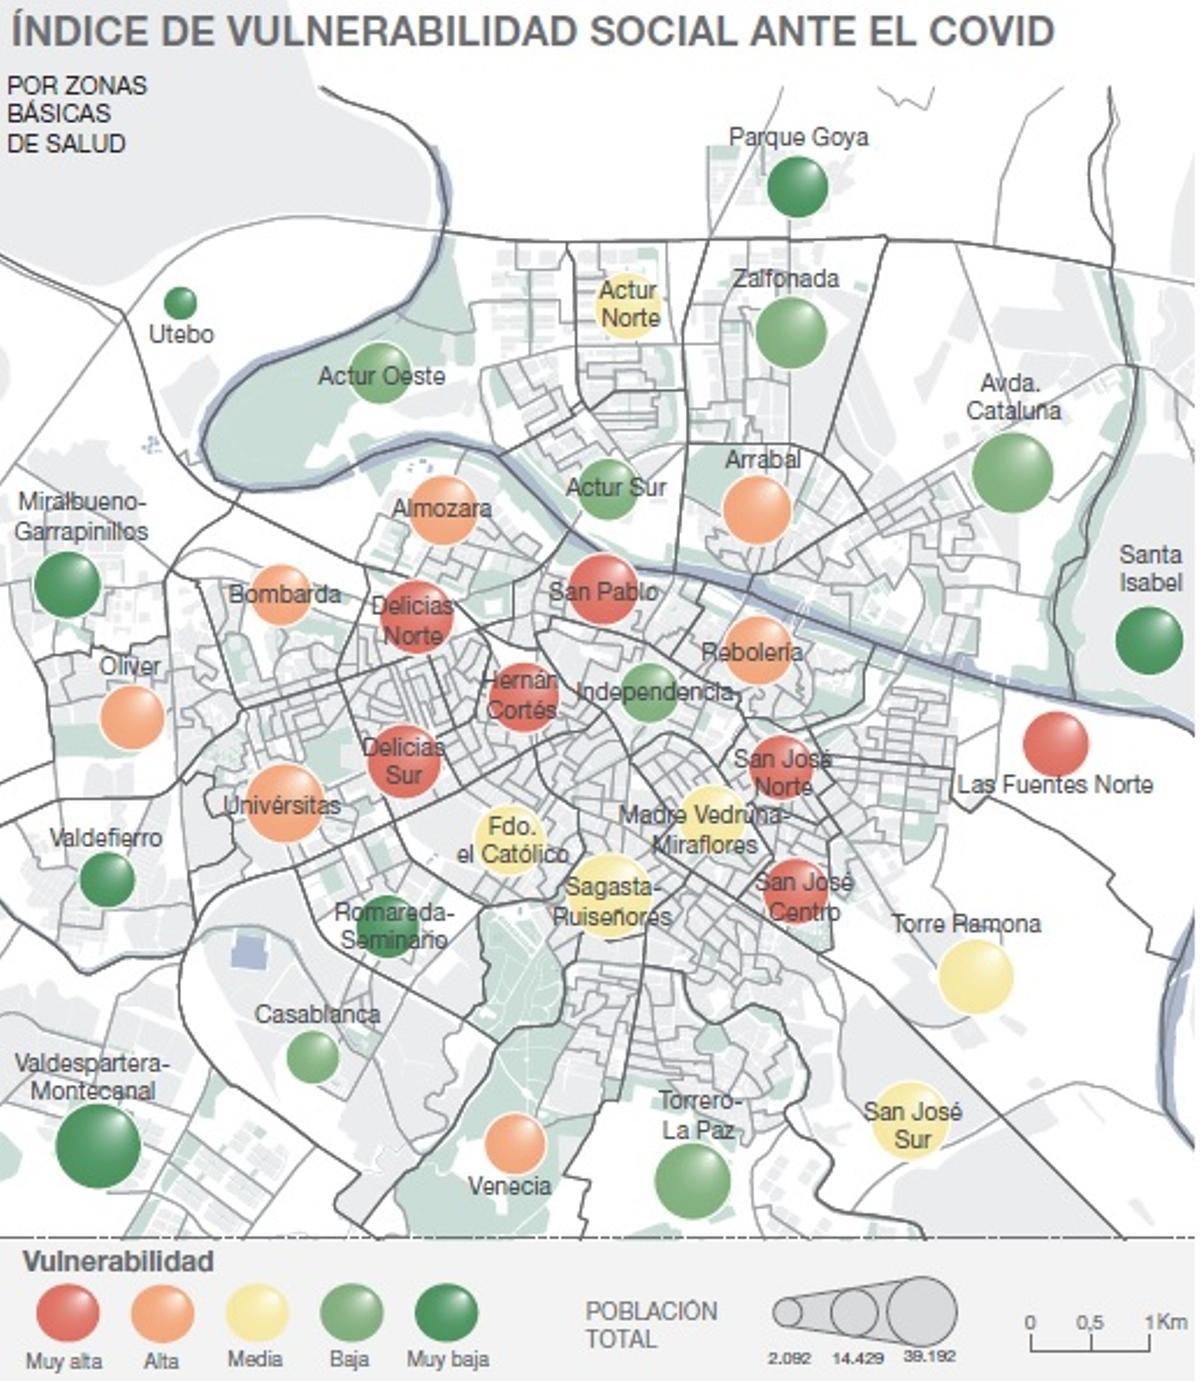 Mapa de vulnerabilidad social ante el covid por barrios.